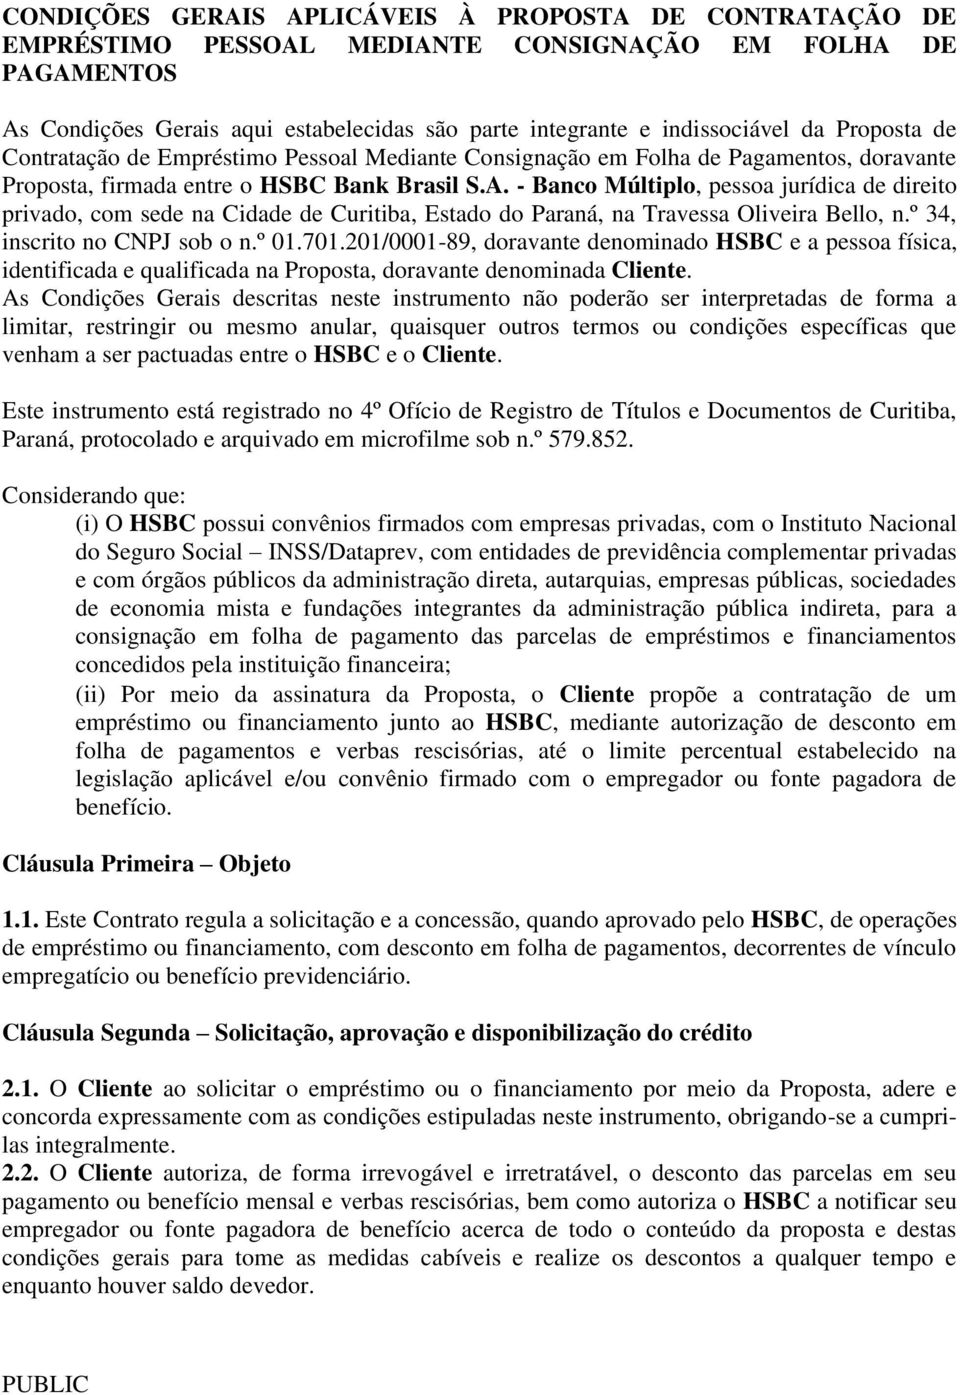 - Banco Múltiplo, pessoa jurídica de direito privado, com sede na Cidade de Curitiba, Estado do Paraná, na Travessa Oliveira Bello, n.º 34, inscrito no CNPJ sob o n.º 01.701.